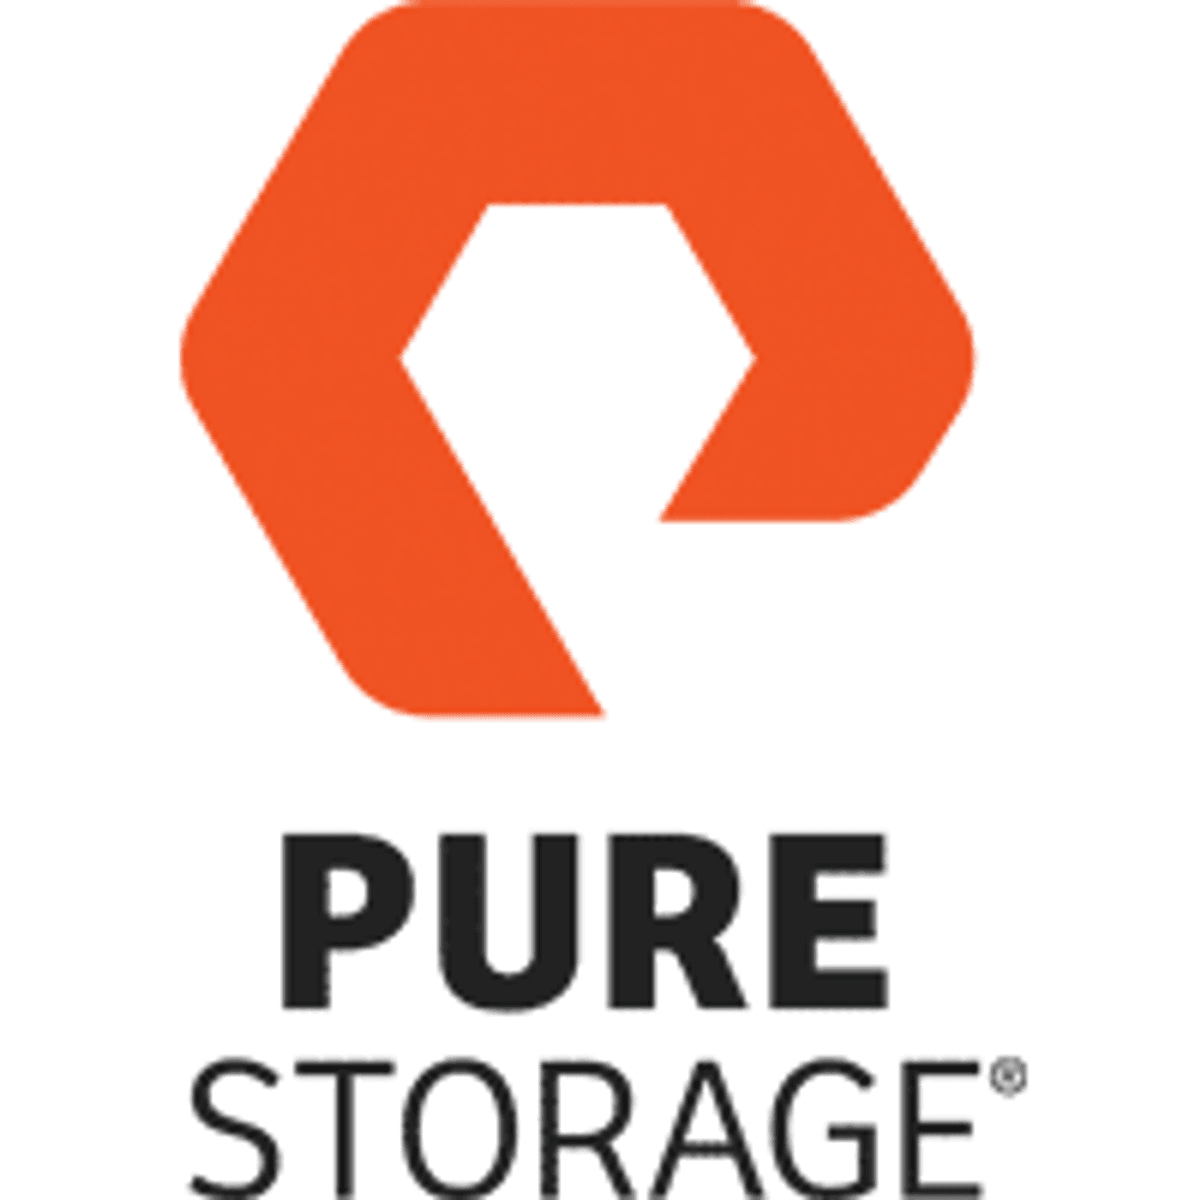 Pure Storage FlashBlade nadert een miljard dollar aan omzet image